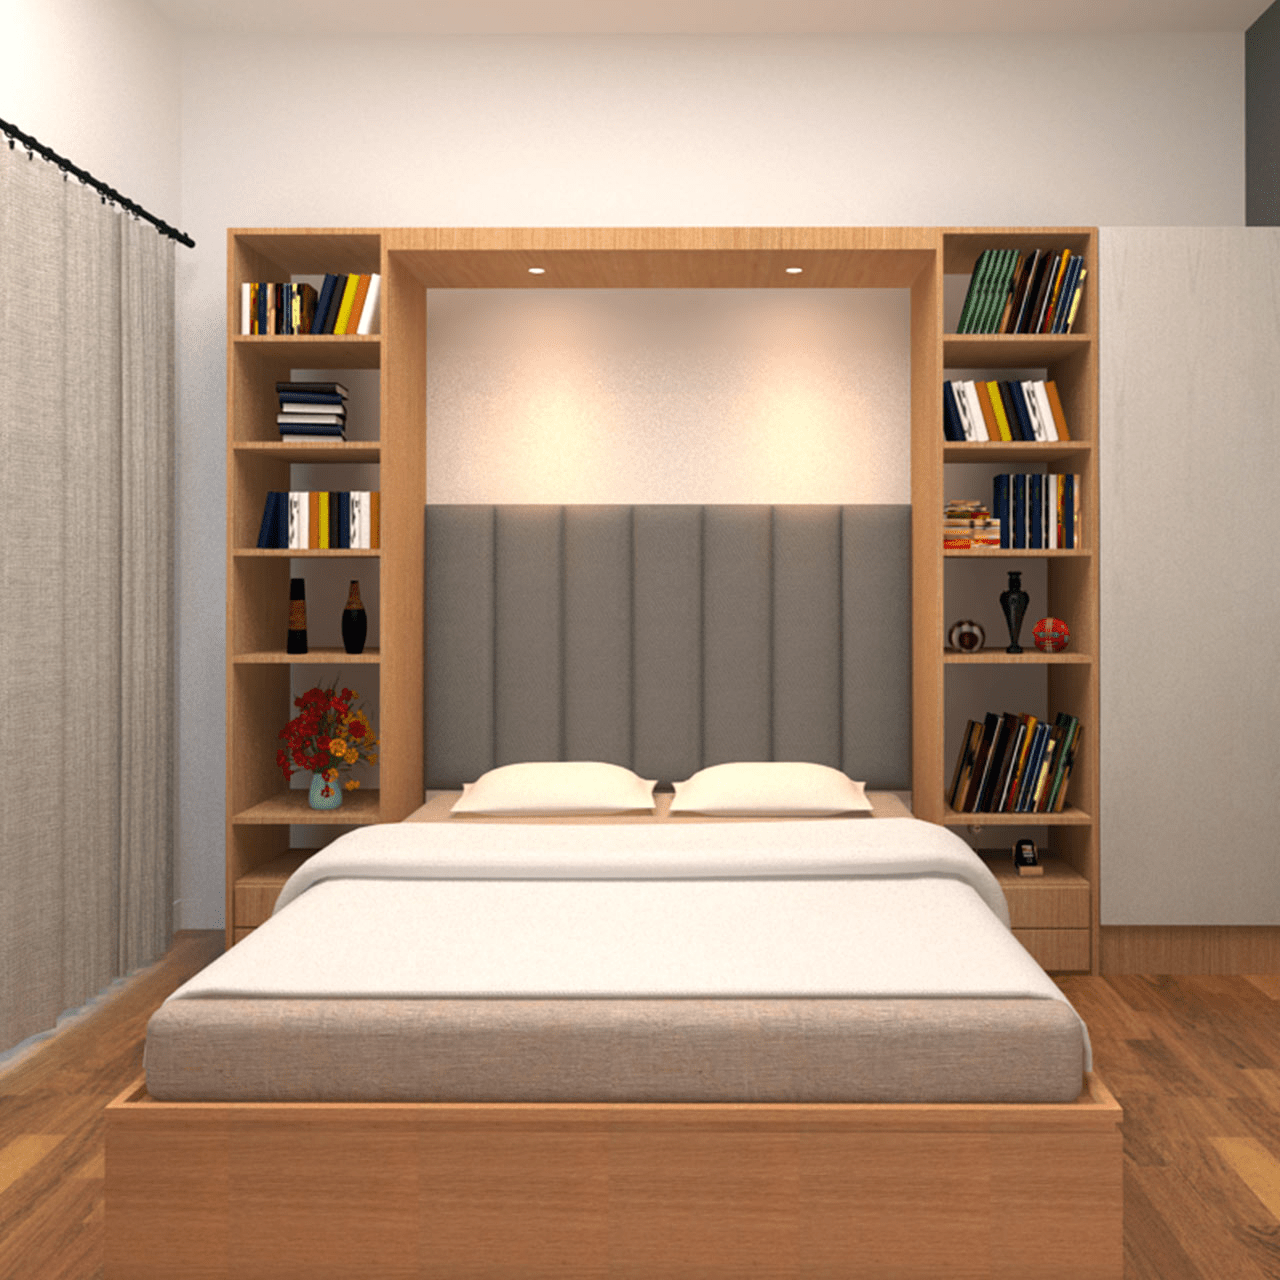 Ý tưởng thiết kế phòng ngủ độc đáo từ việc decor tường đầu giường - Ảnh 4.